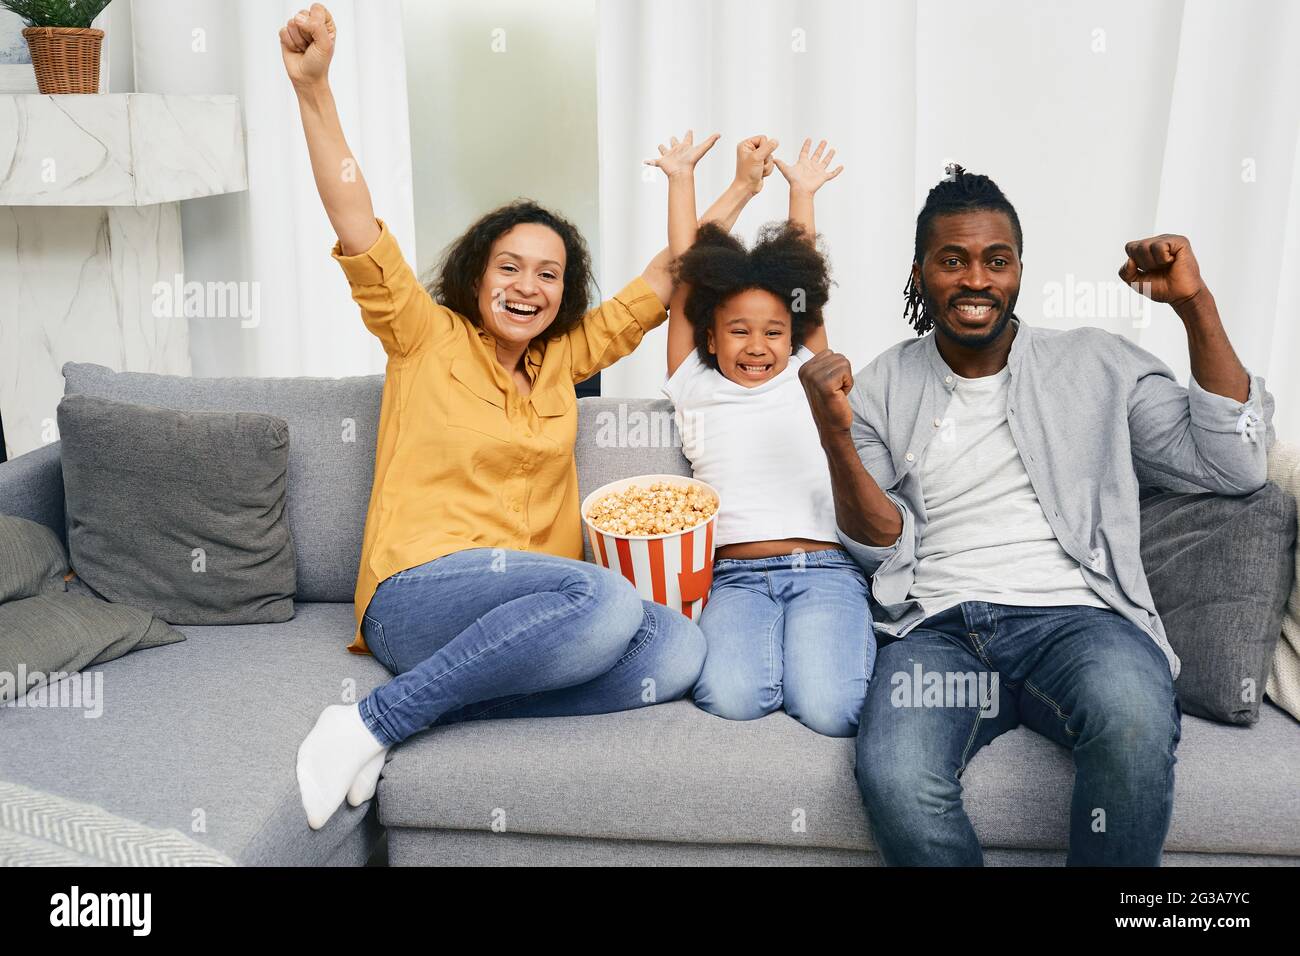 C'est beaucoup de plaisir, la famille afro-américaine apprécie et s'amuse tout en regardant une comédie. Famille Banque D'Images